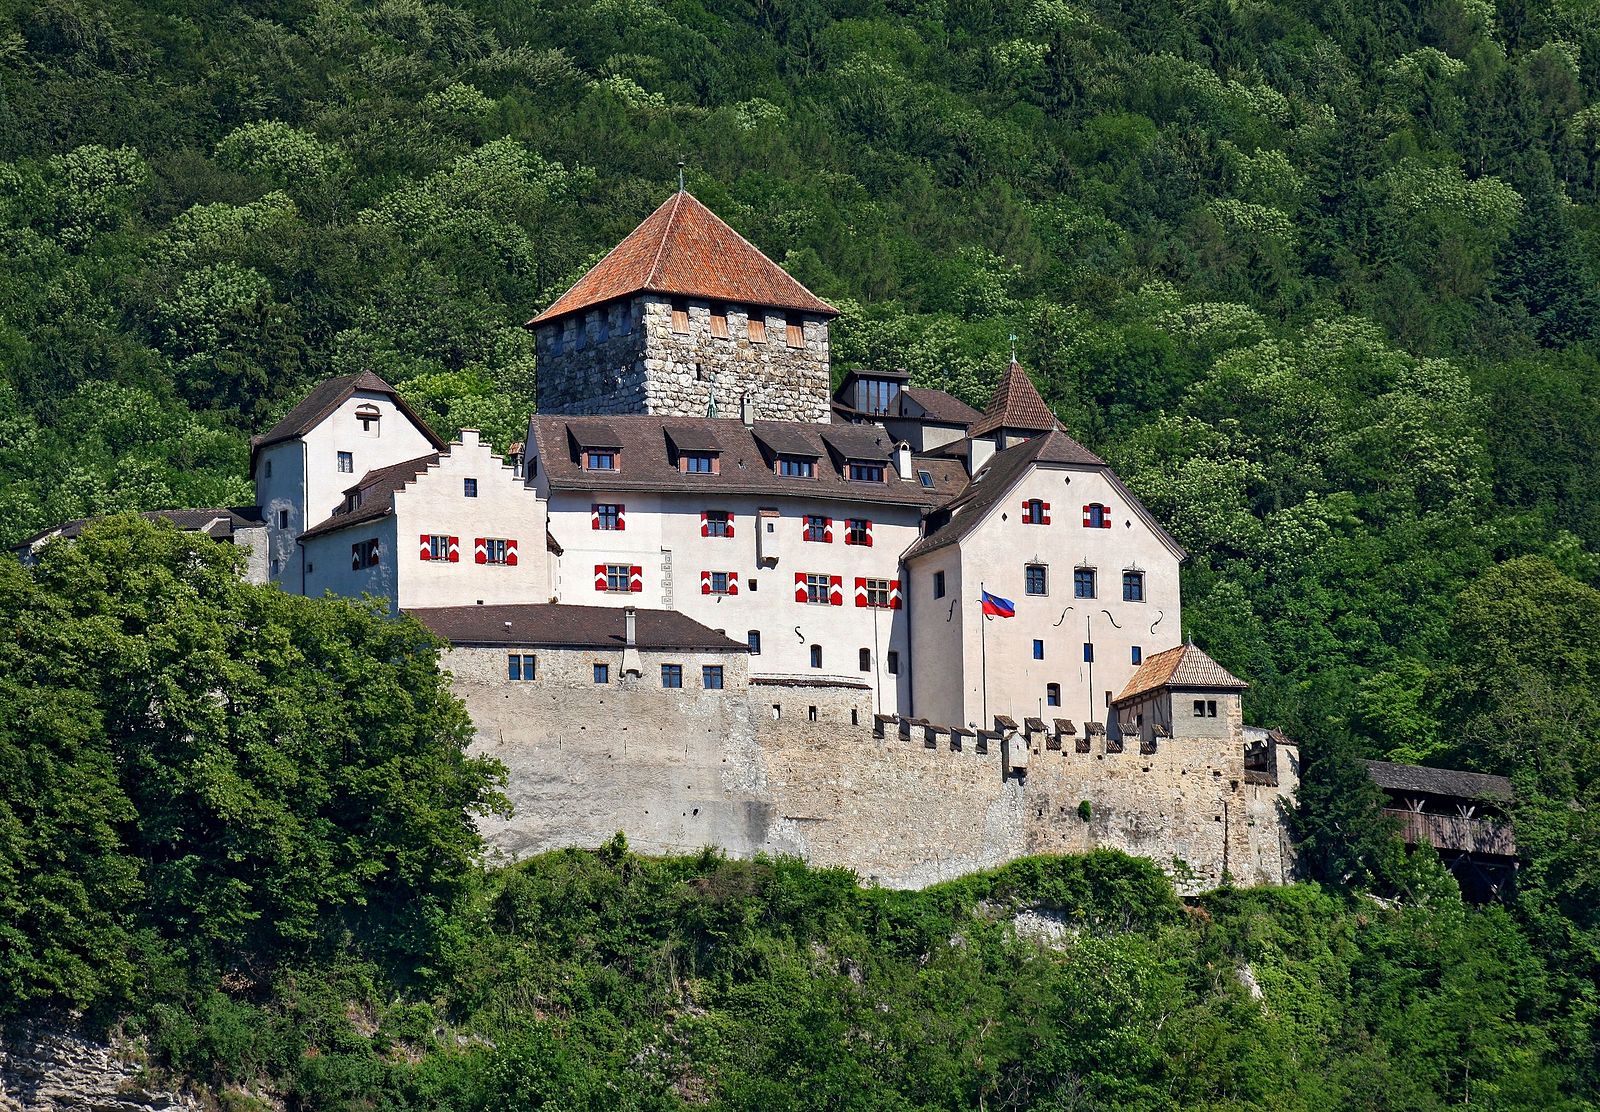 Schloss Vaduz: Wohnsitz des Fürsten von Liechtenstein. Amt für Presse und Information des Fürstentums Liechtenstein.